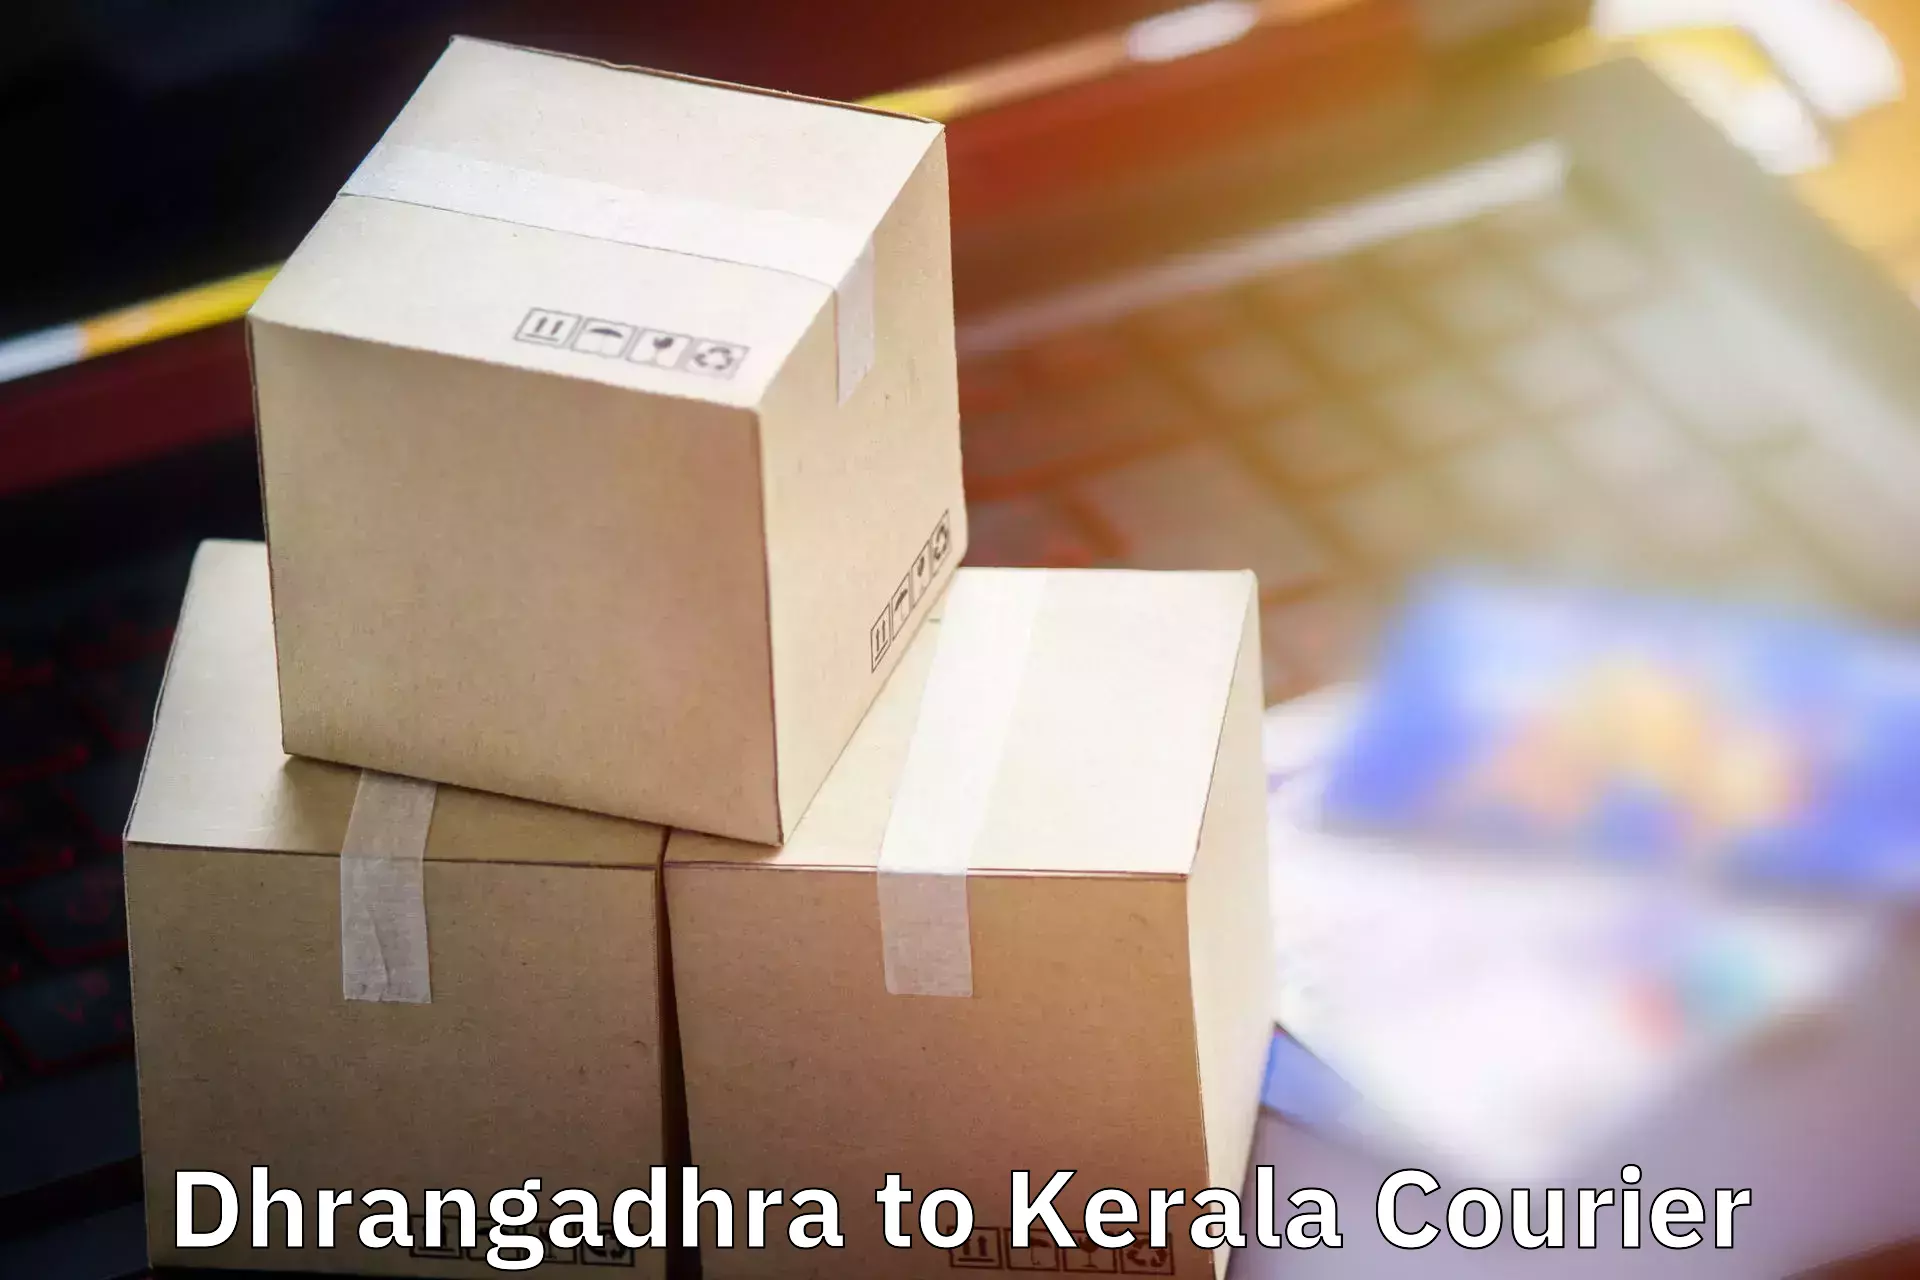 Baggage shipping schedule Dhrangadhra to Guruvayur